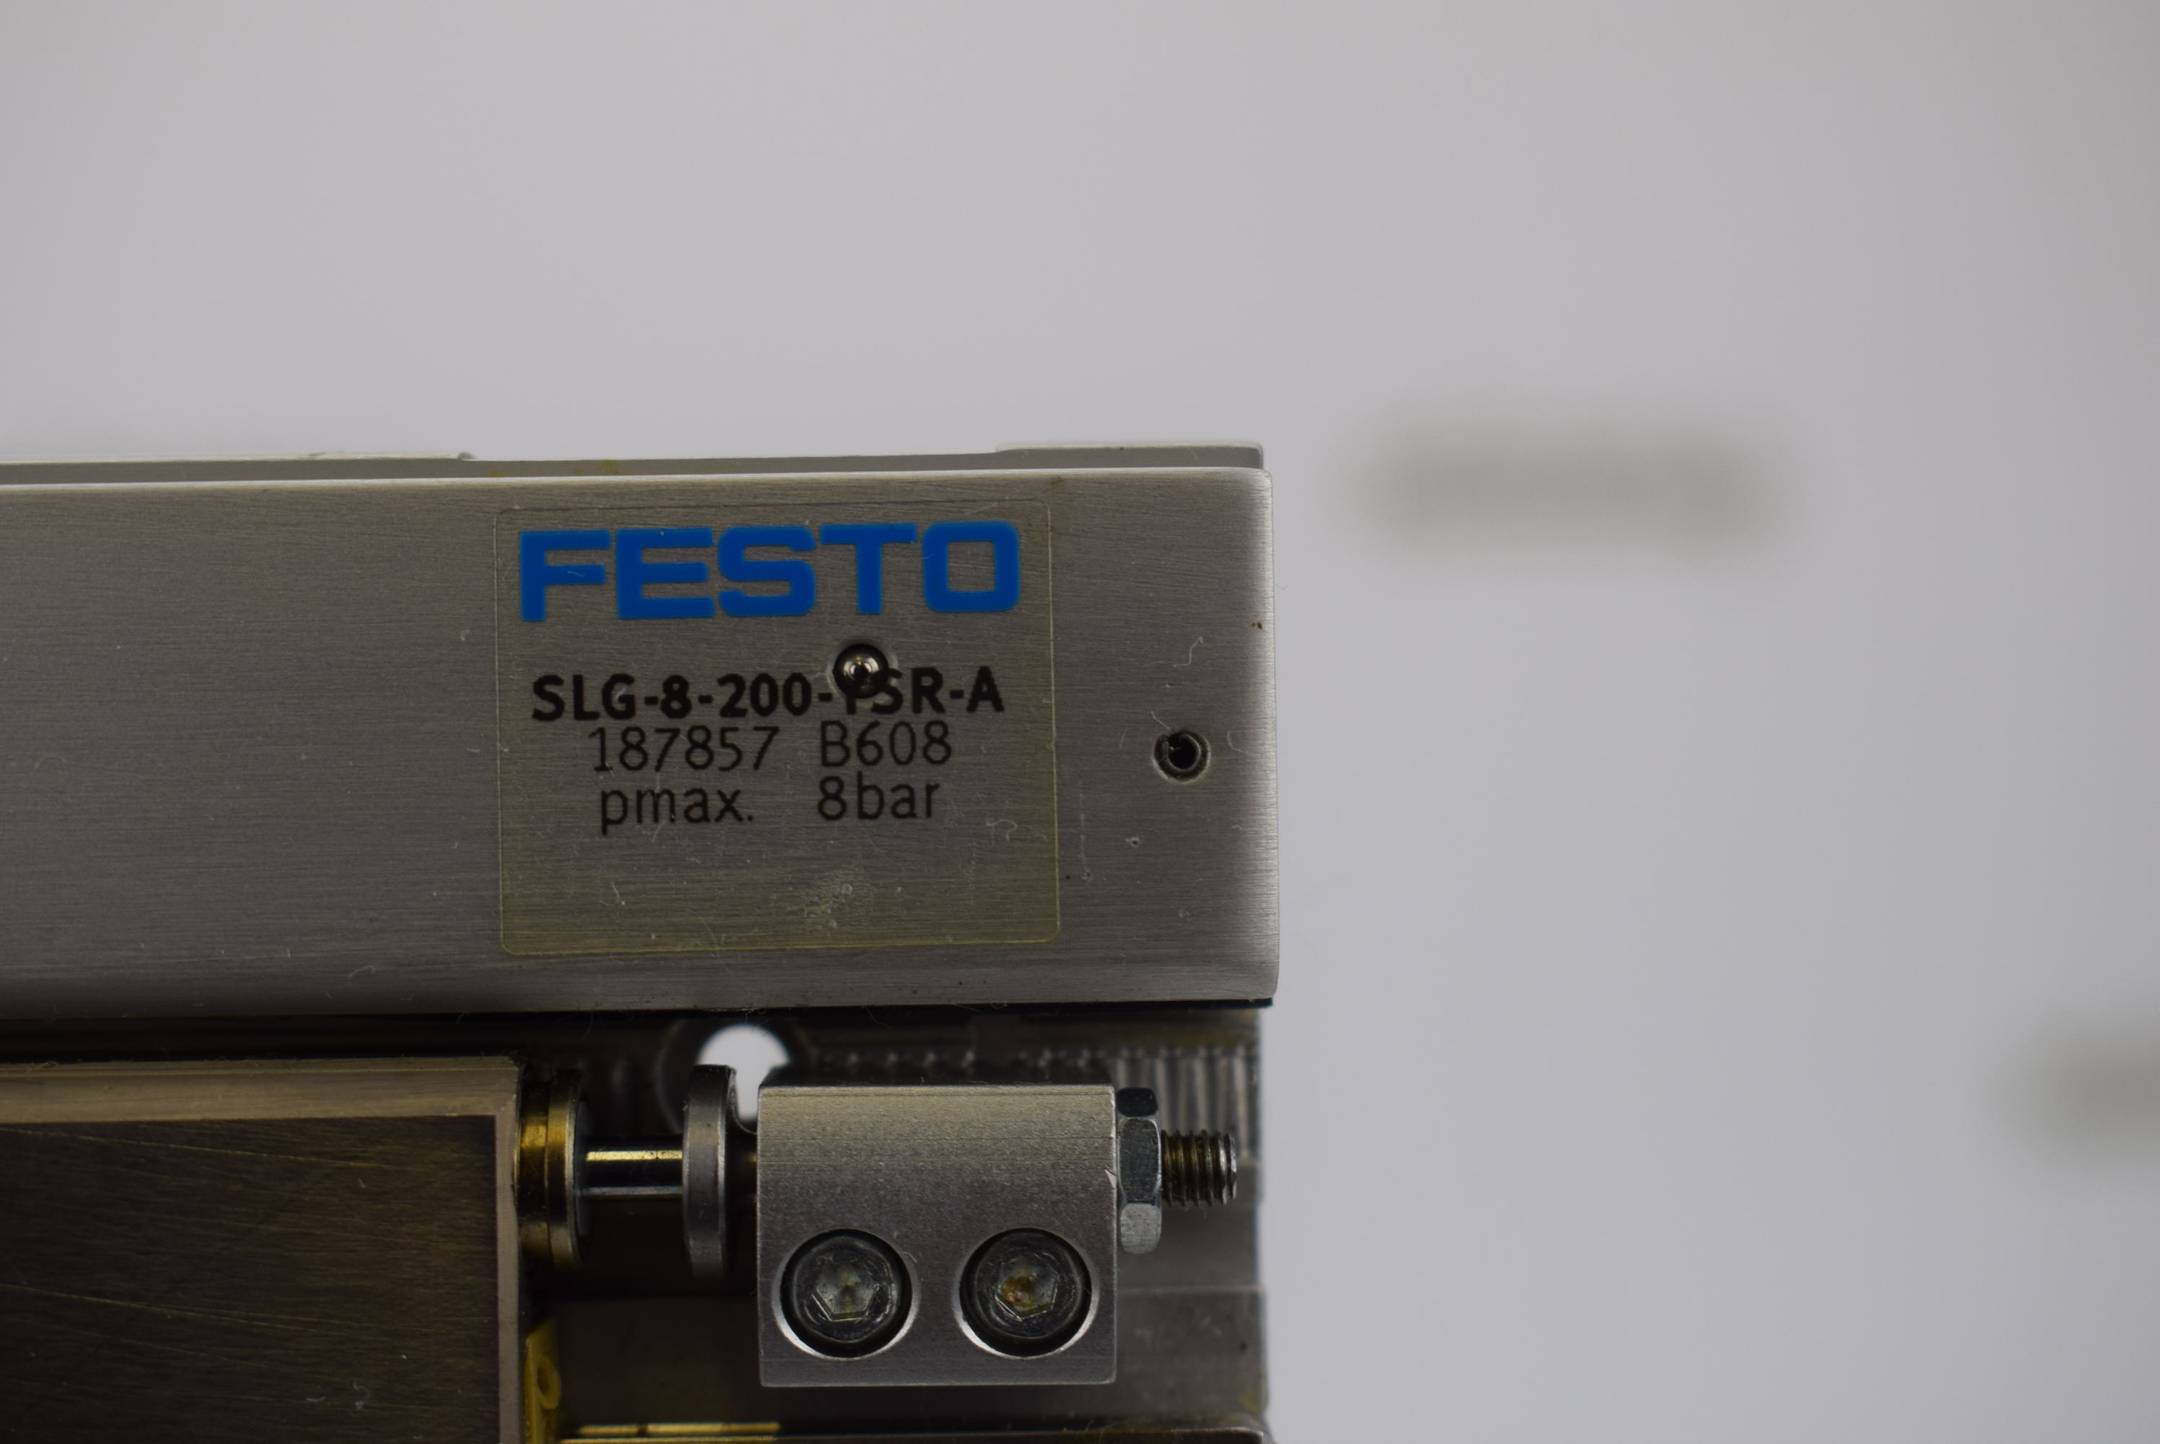 Festo Linearantrieb Flachbauweise SLG-8-200-YSR-A ( 187857 )